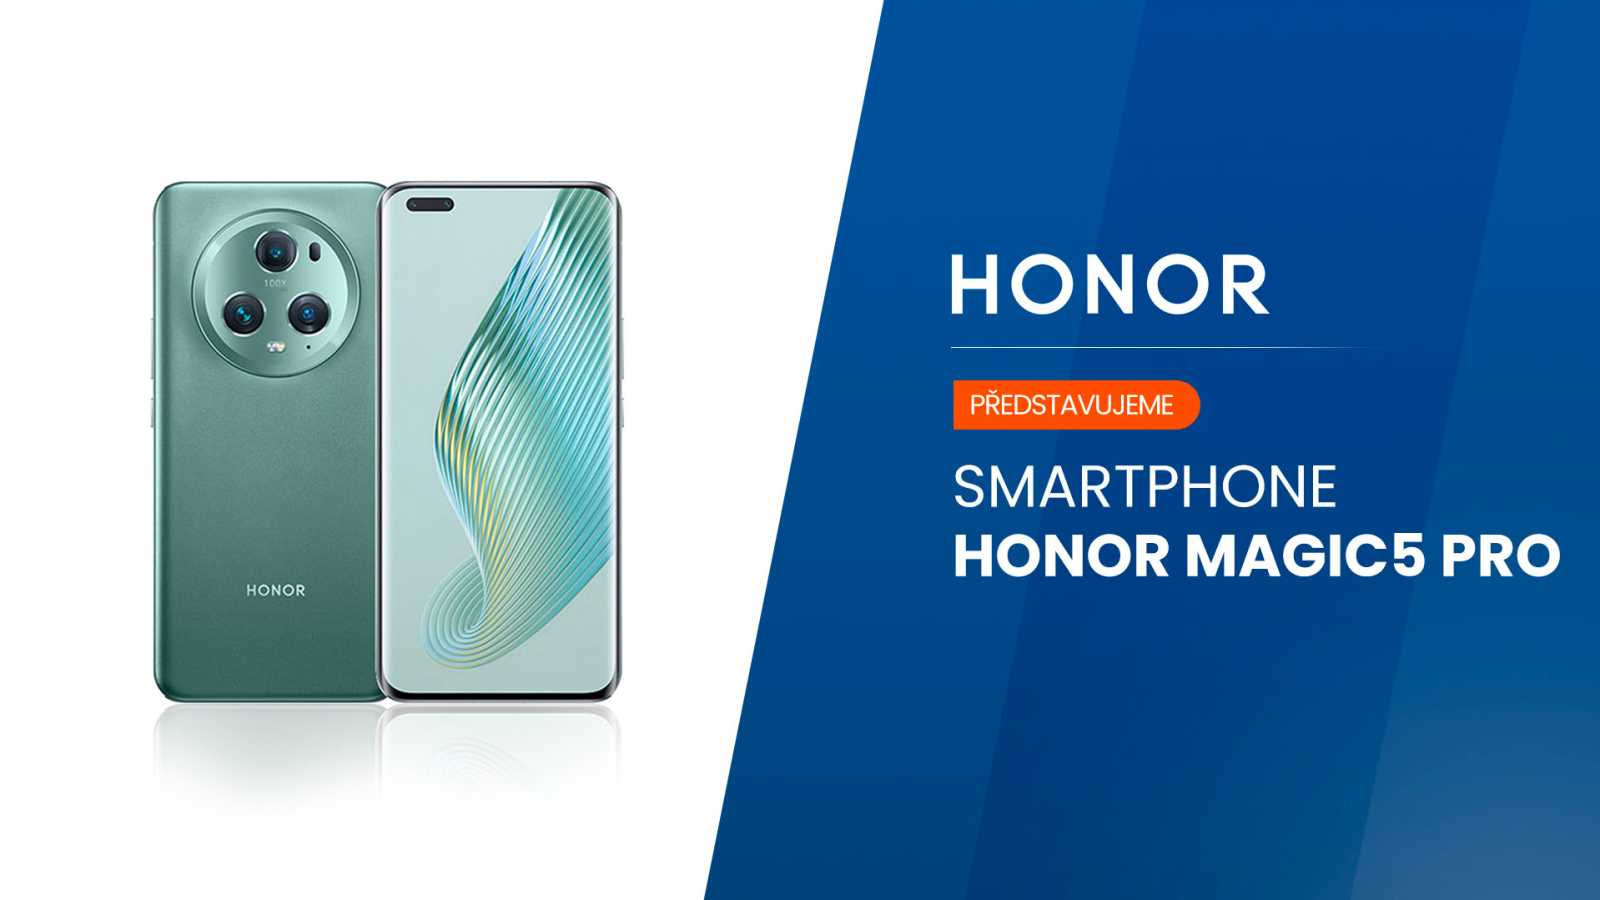 Nový Honor Magic5 Pro má nejlepší displej a foťák na trhu, navíc je s tabletem zdarma